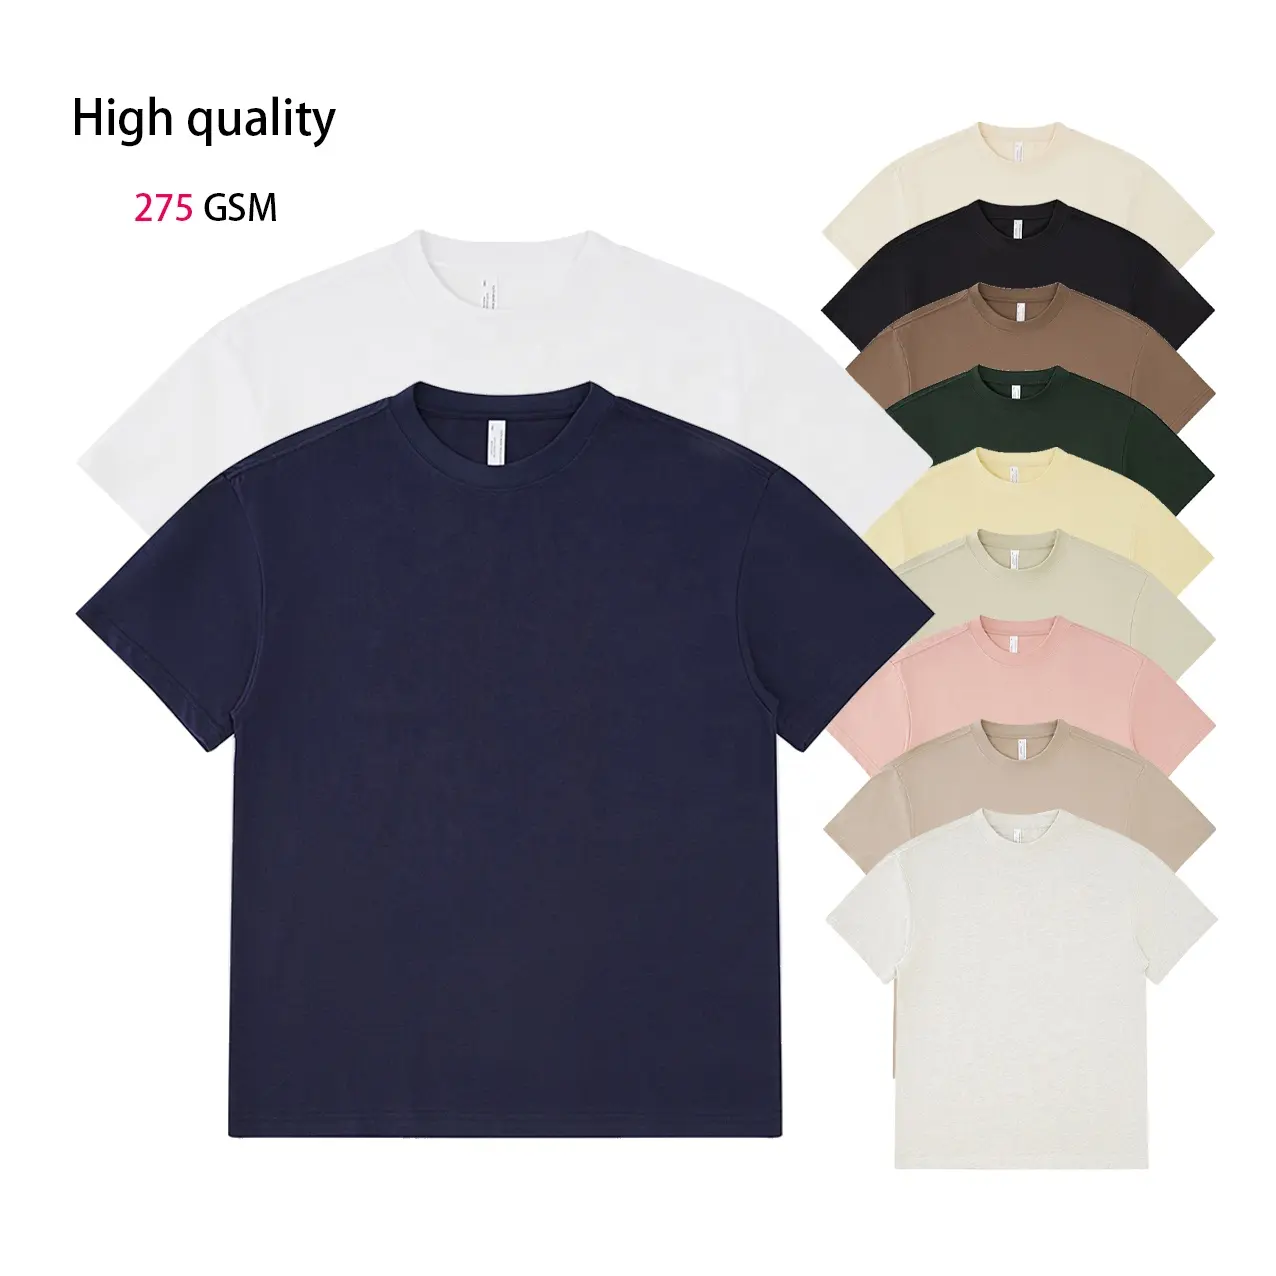 품질 사용자 정의 로고 셔츠 캐주얼 티셔츠 100% 면 남자의 와이드 플레이트 티셔츠 275 GSM 면 빈 티셔츠 귀하의 로고 디자인